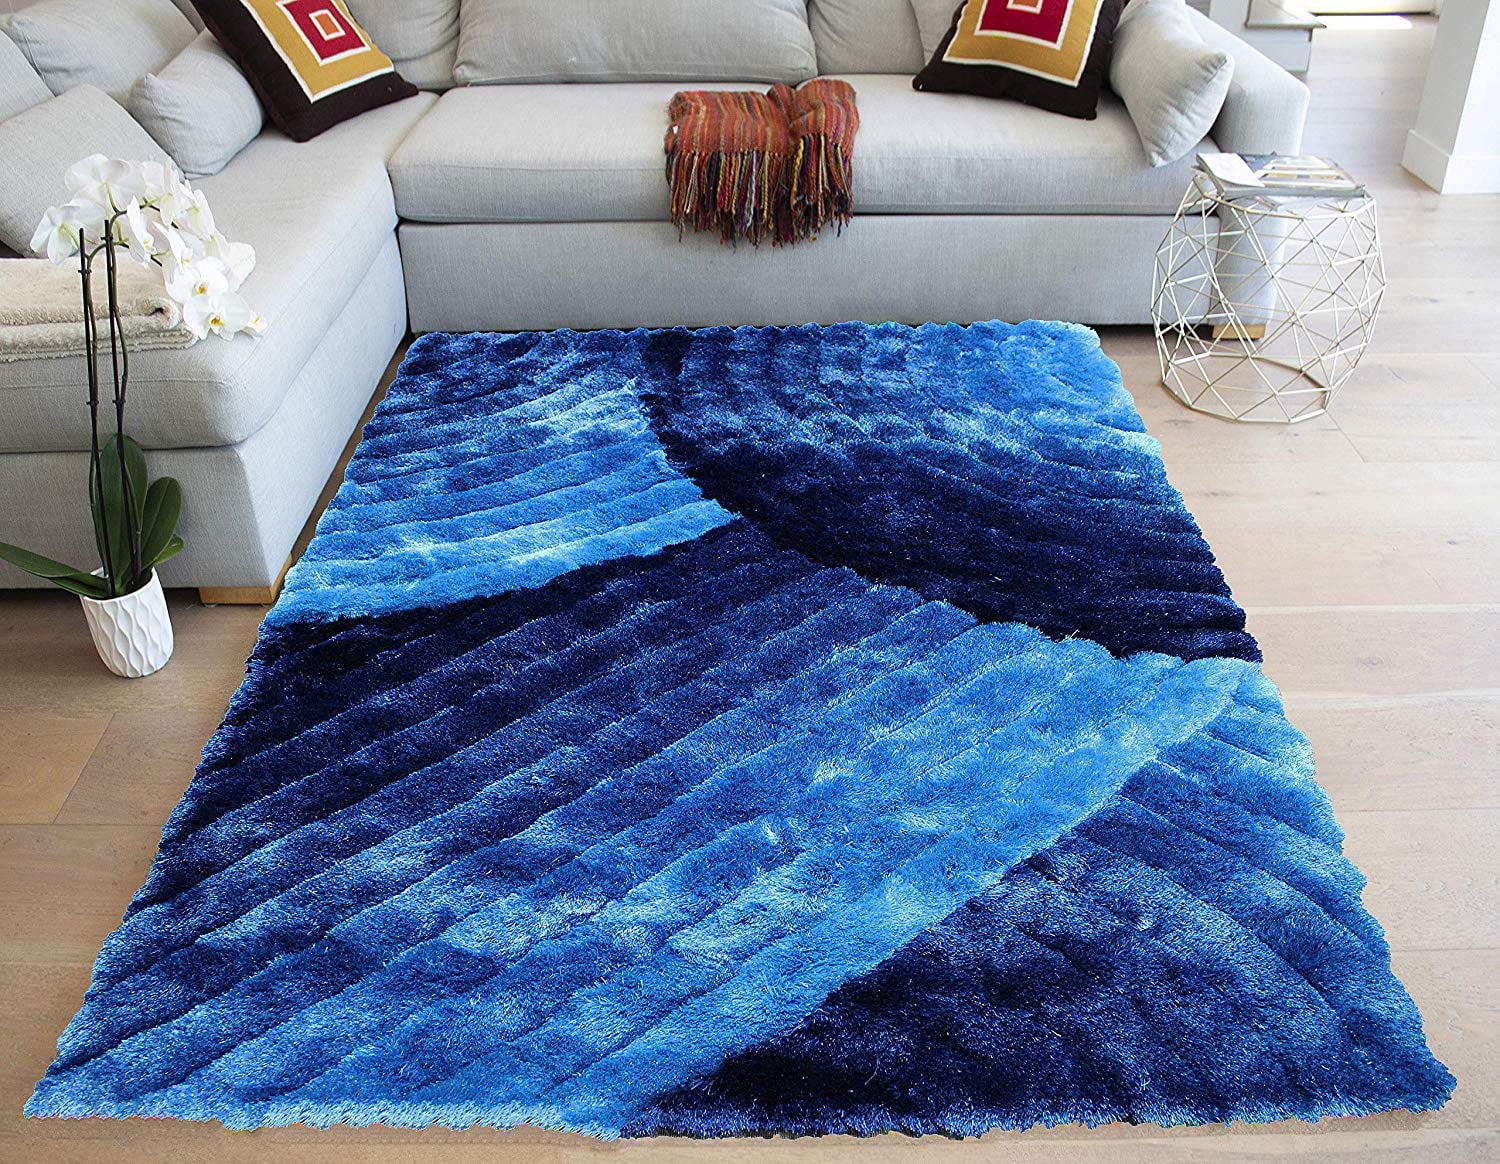 fluffy carpet for living room